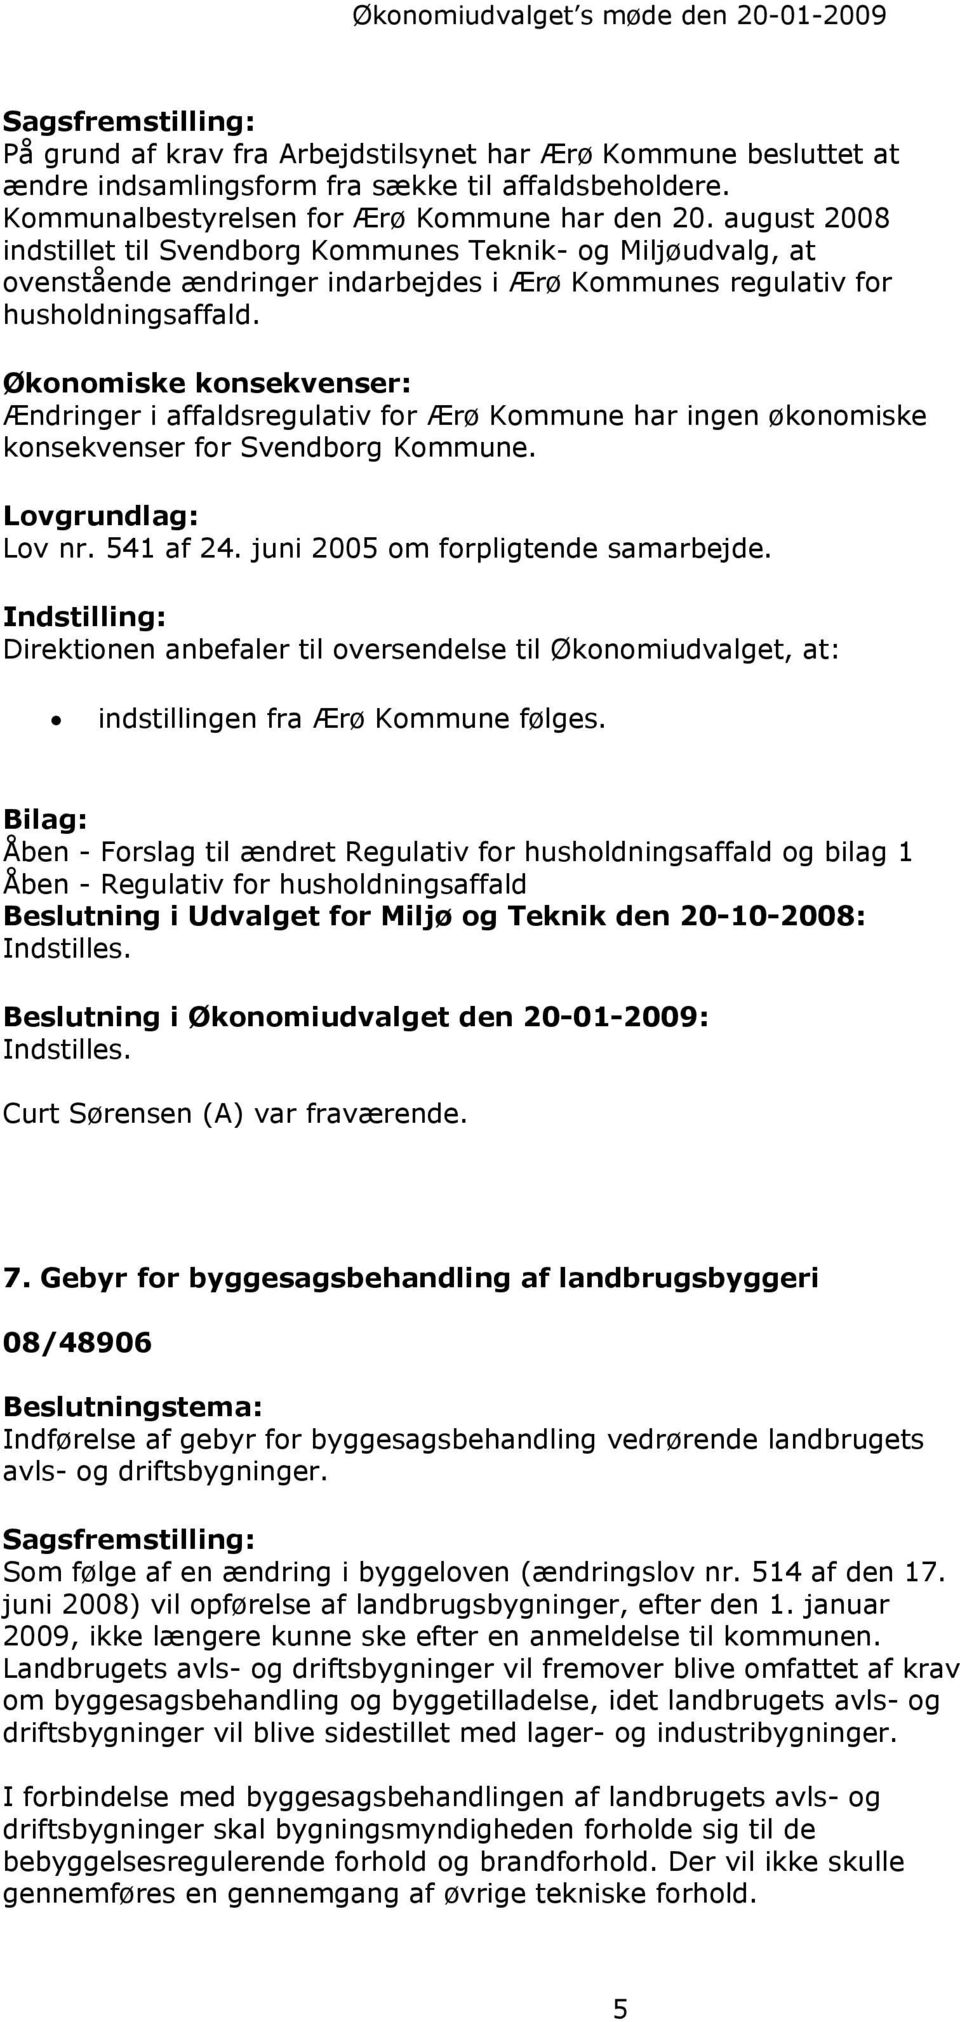 Økonomiske konsekvenser: Ændringer i affaldsregulativ for Ærø Kommune har ingen økonomiske konsekvenser for Svendborg Kommune. Lovgrundlag: Lov nr. 541 af 24. juni 2005 om forpligtende samarbejde.